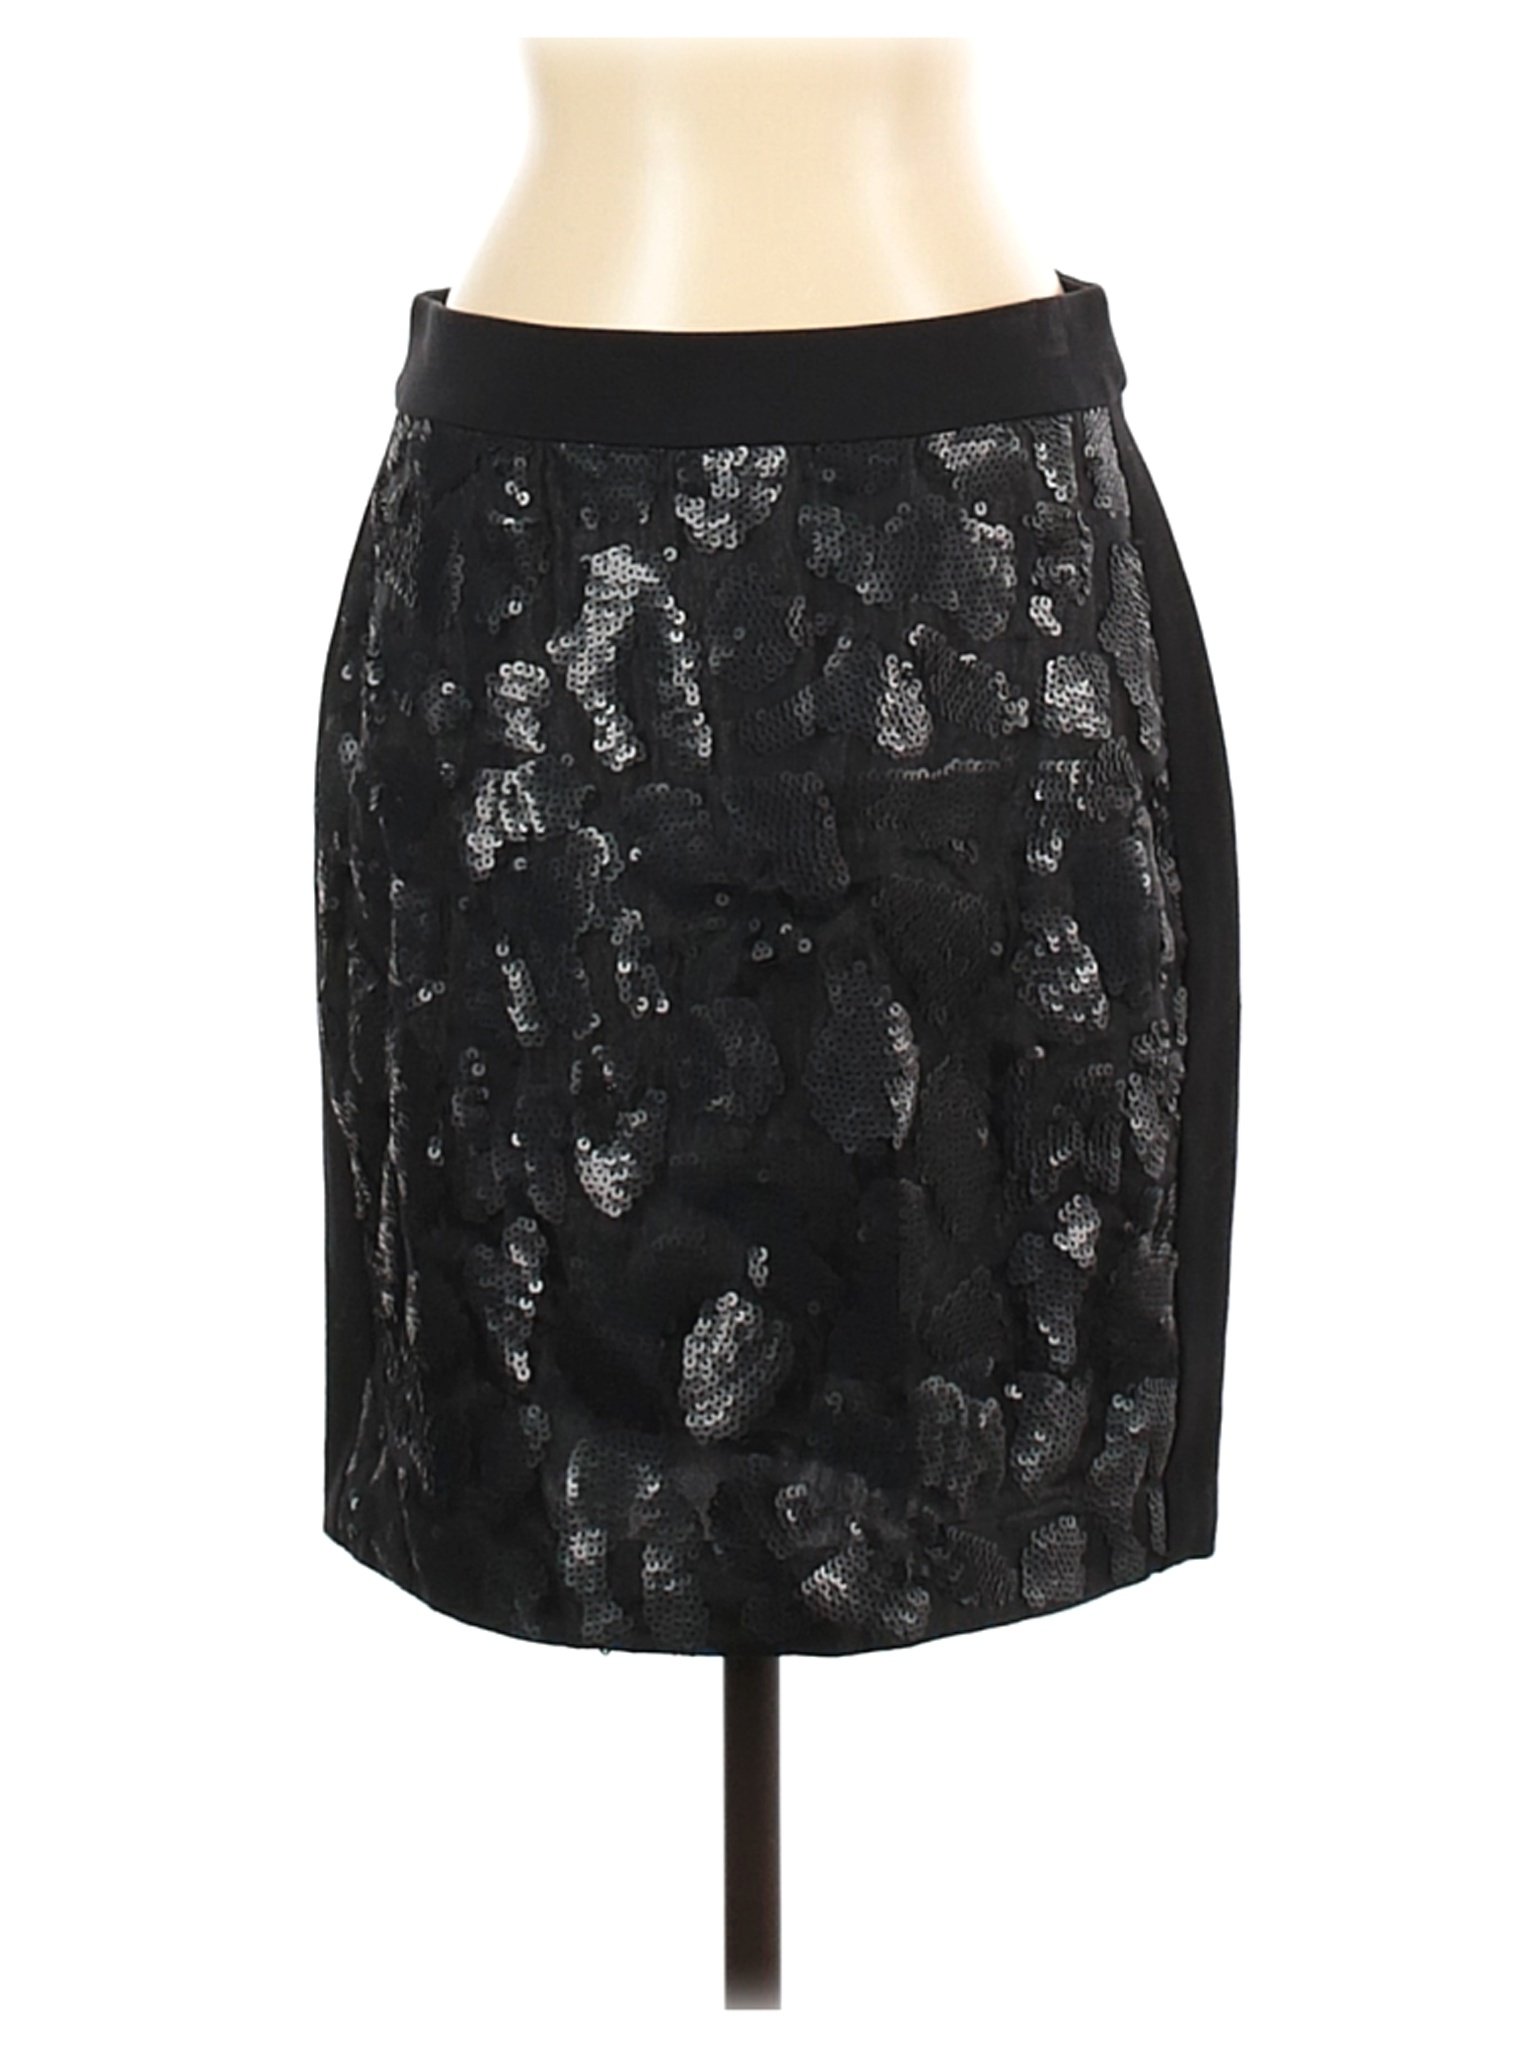 Ann Taylor Women Black Formal Skirt 4 | eBay